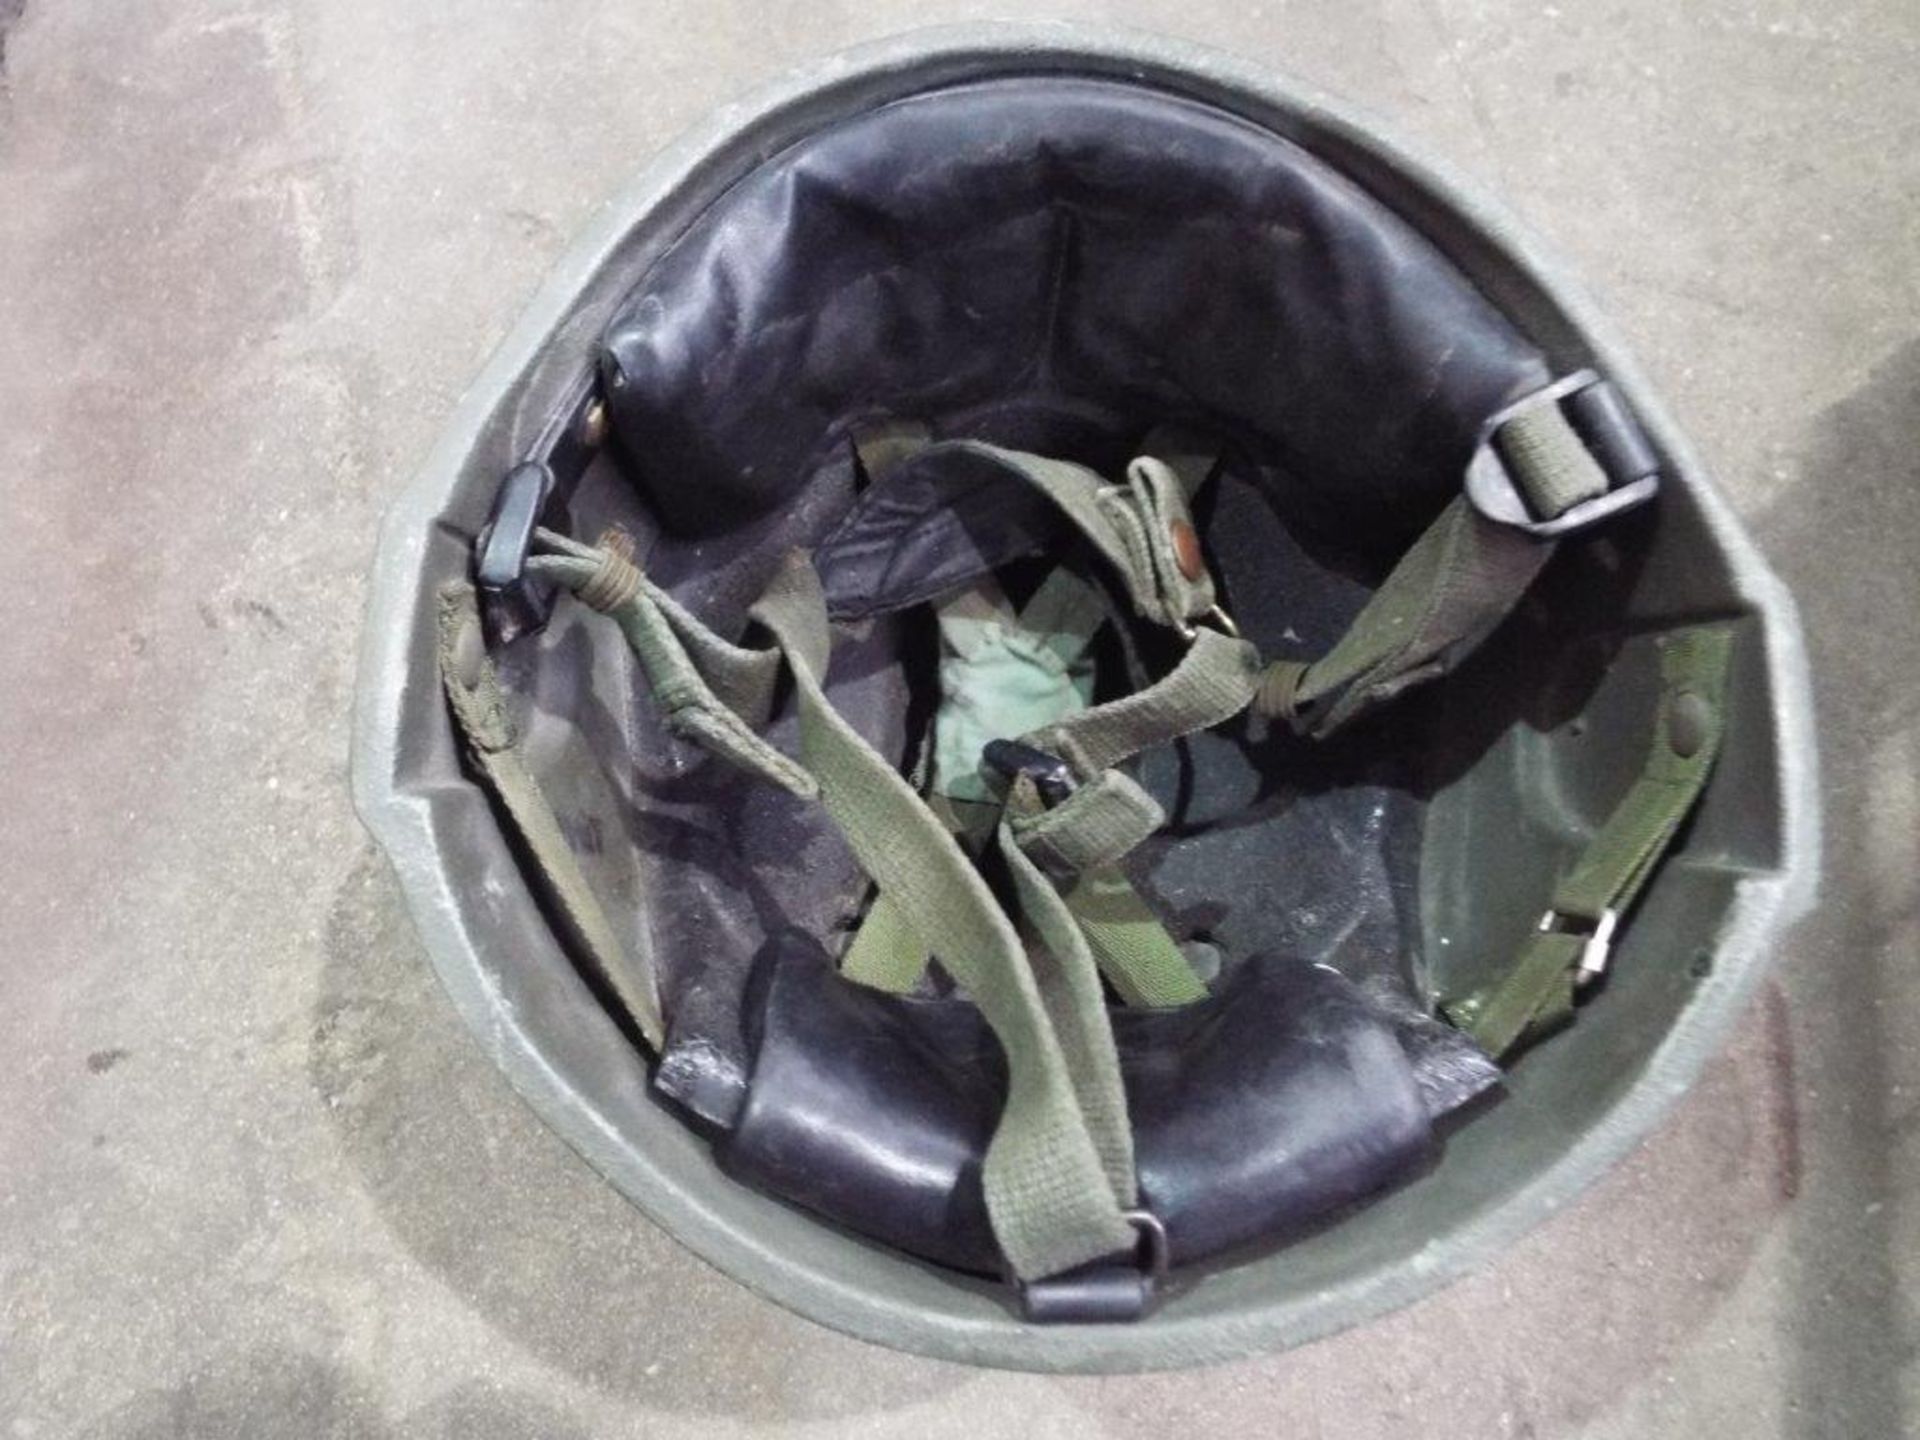 6 x GS Mk6 Combat Helmets - Image 4 of 6